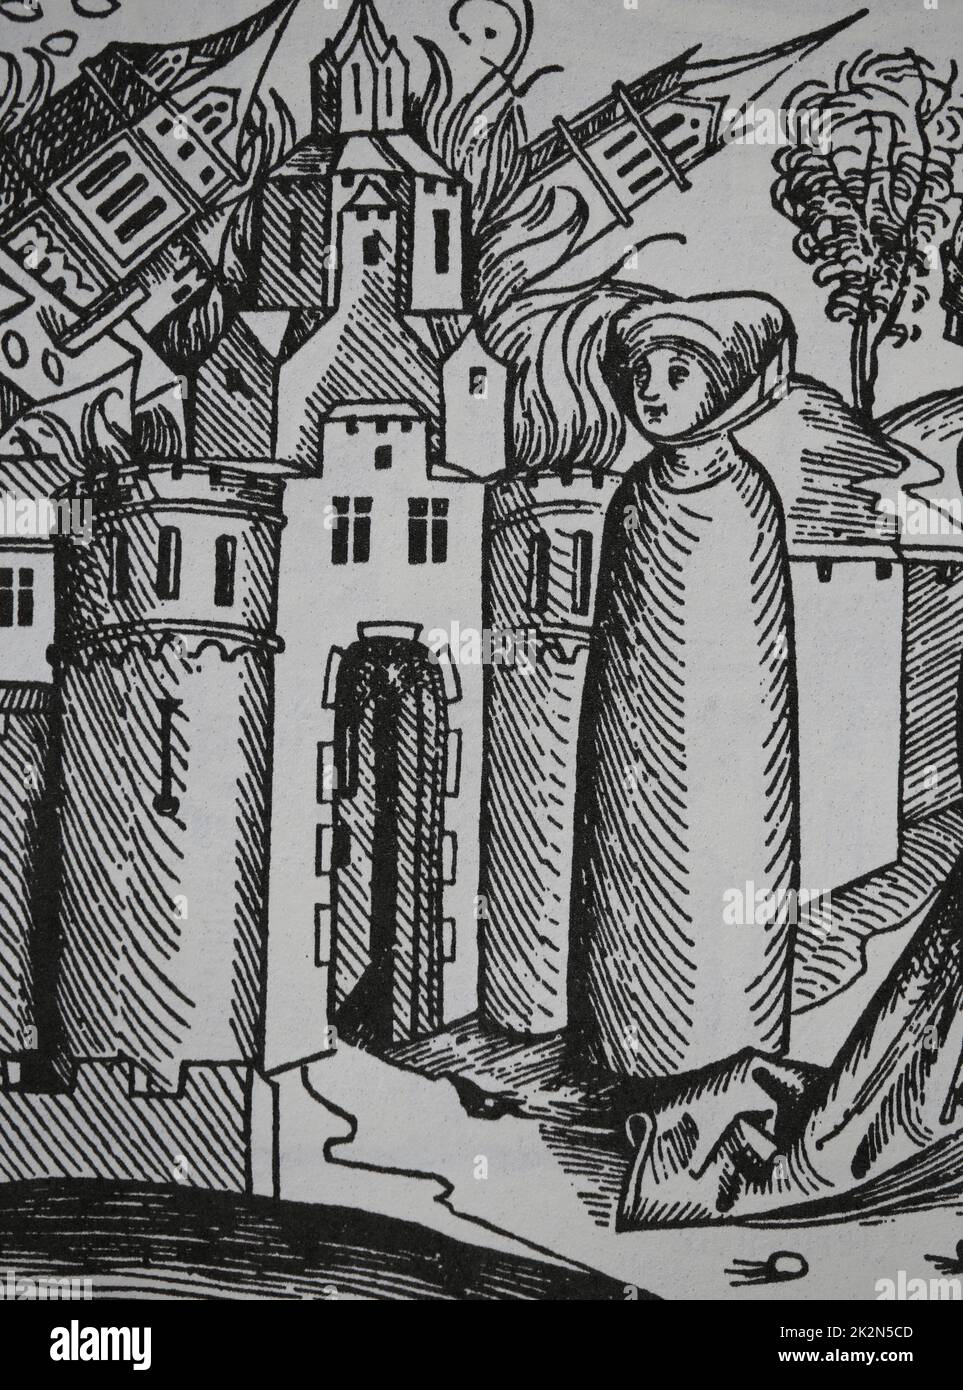 Destruktion von Sodom und Gomorra. Lots Frau, die Gott ungehorsam ist, wird zu einer Säule aus Salz. Nürnberger Chronik, 1493. Stockfoto